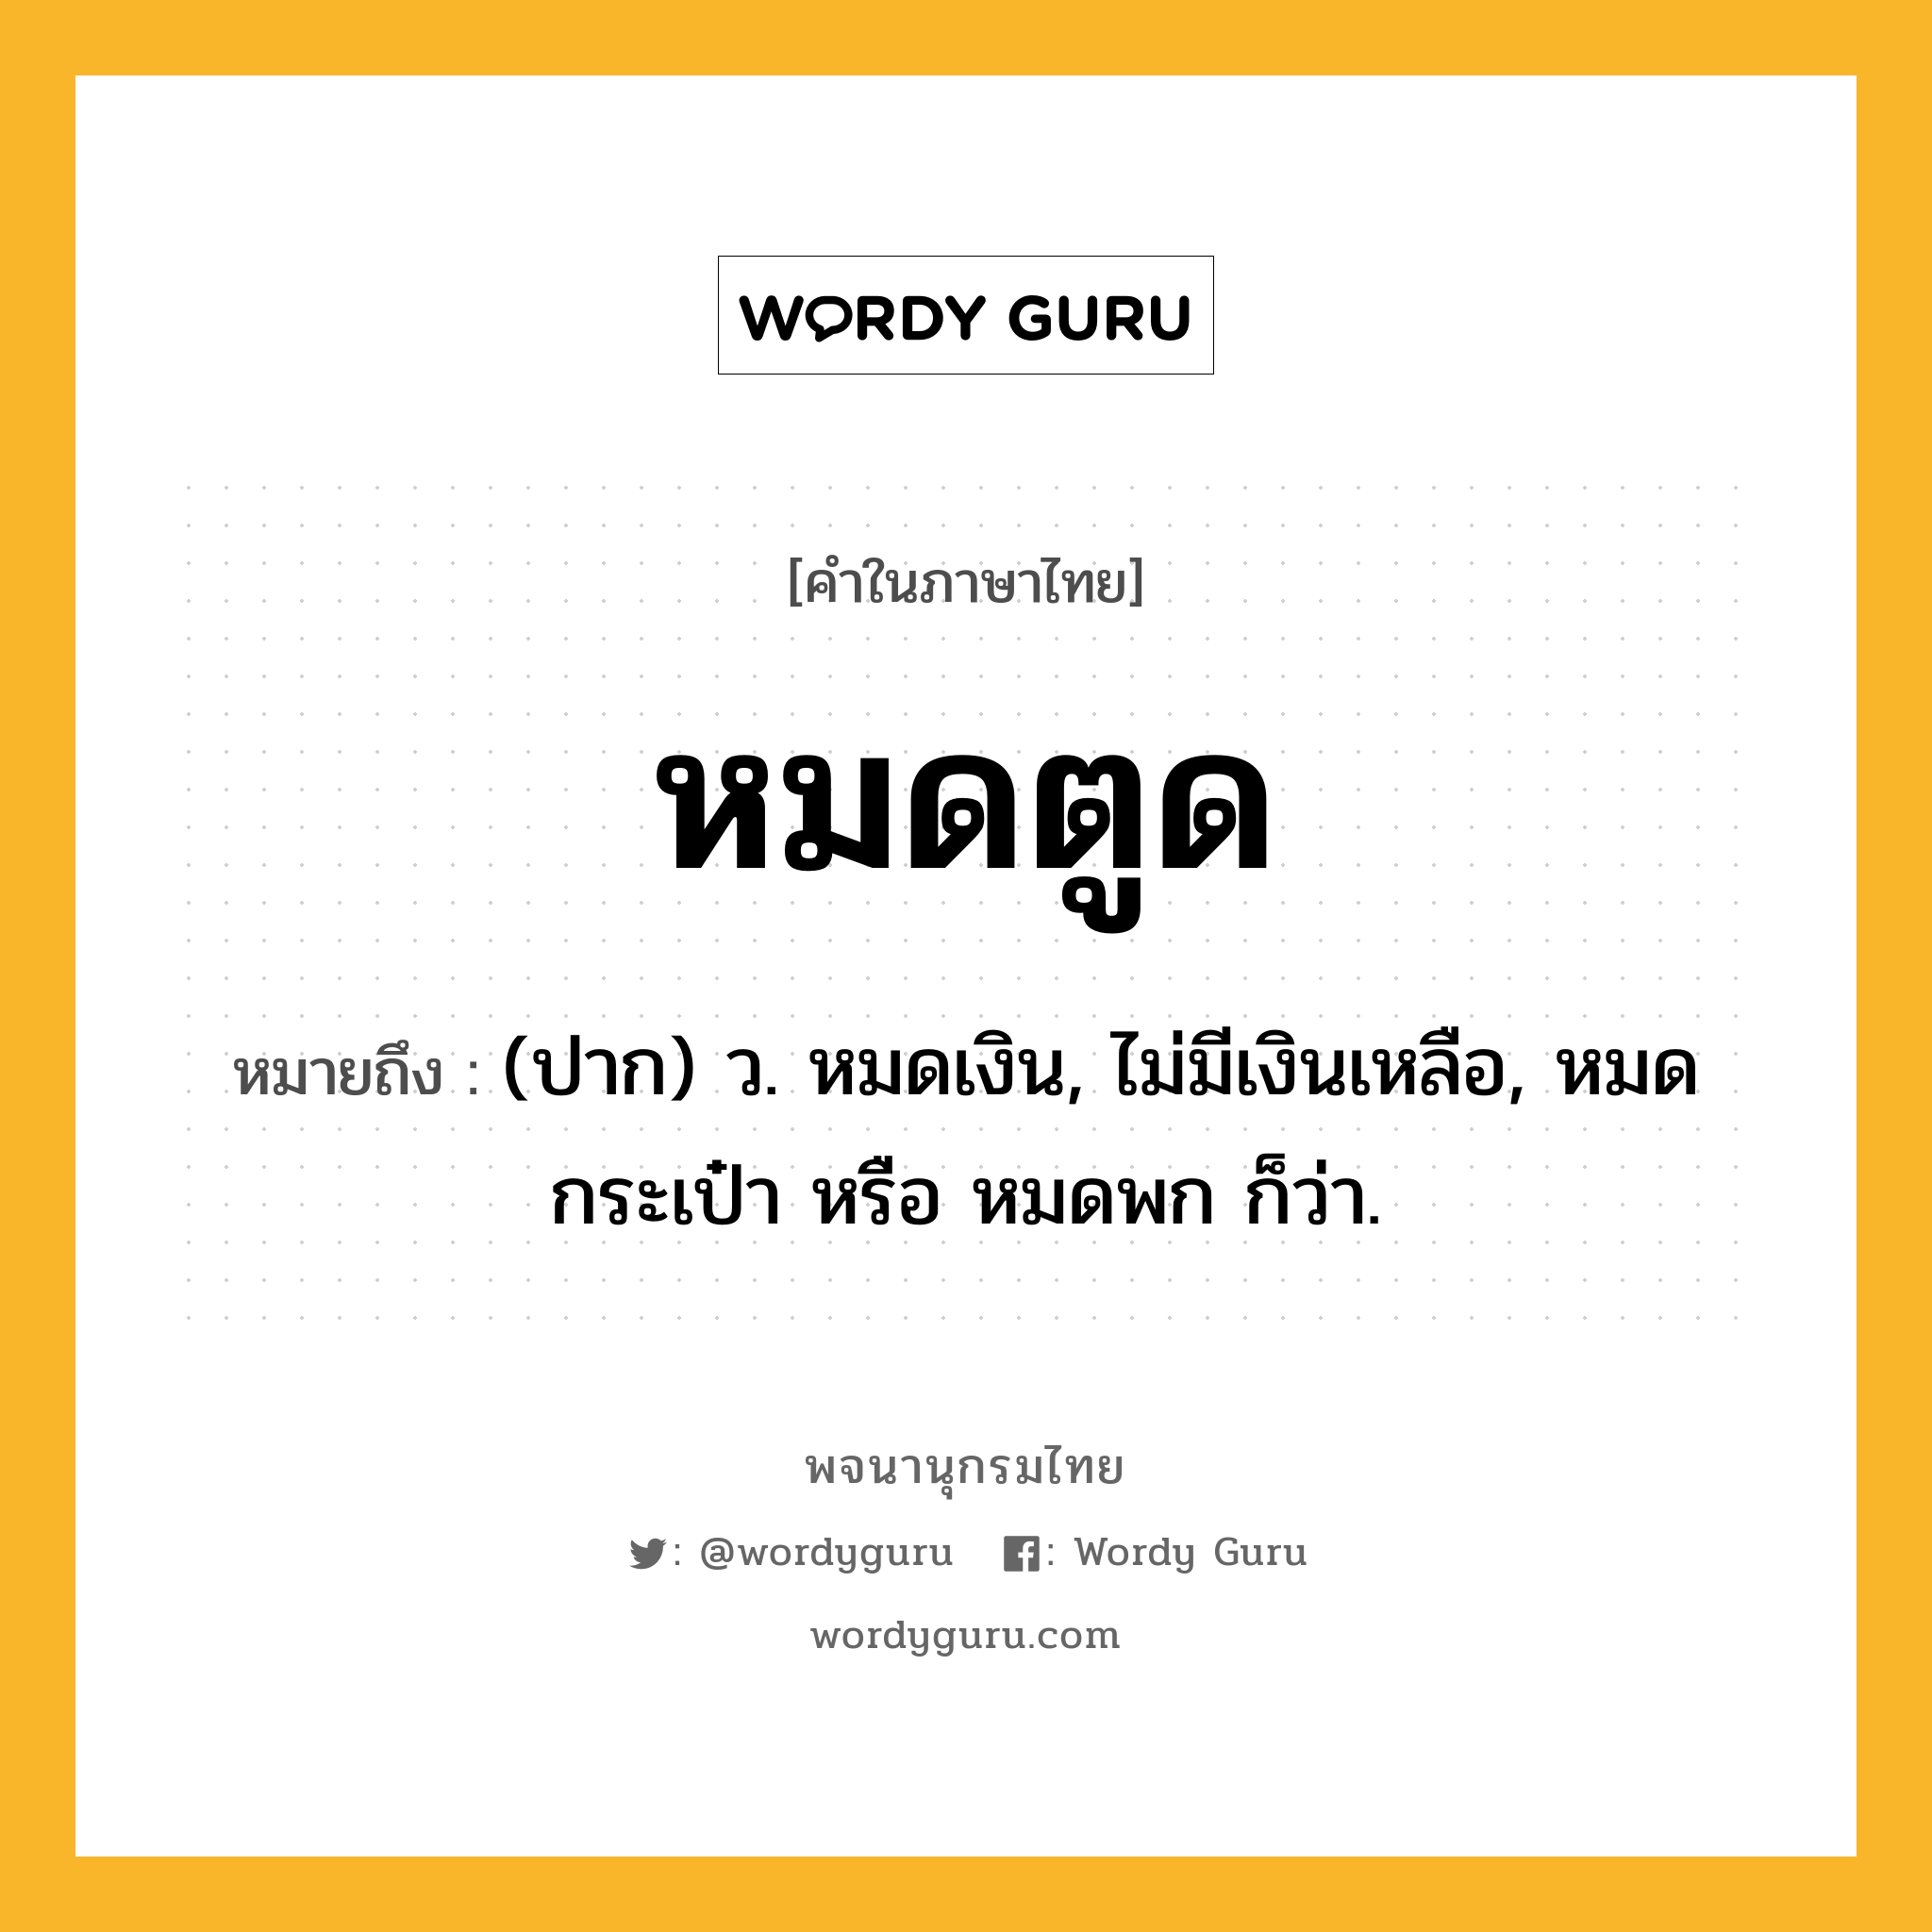 หมดตูด หมายถึงอะไร?, คำในภาษาไทย หมดตูด หมายถึง (ปาก) ว. หมดเงิน, ไม่มีเงินเหลือ, หมดกระเป๋า หรือ หมดพก ก็ว่า.